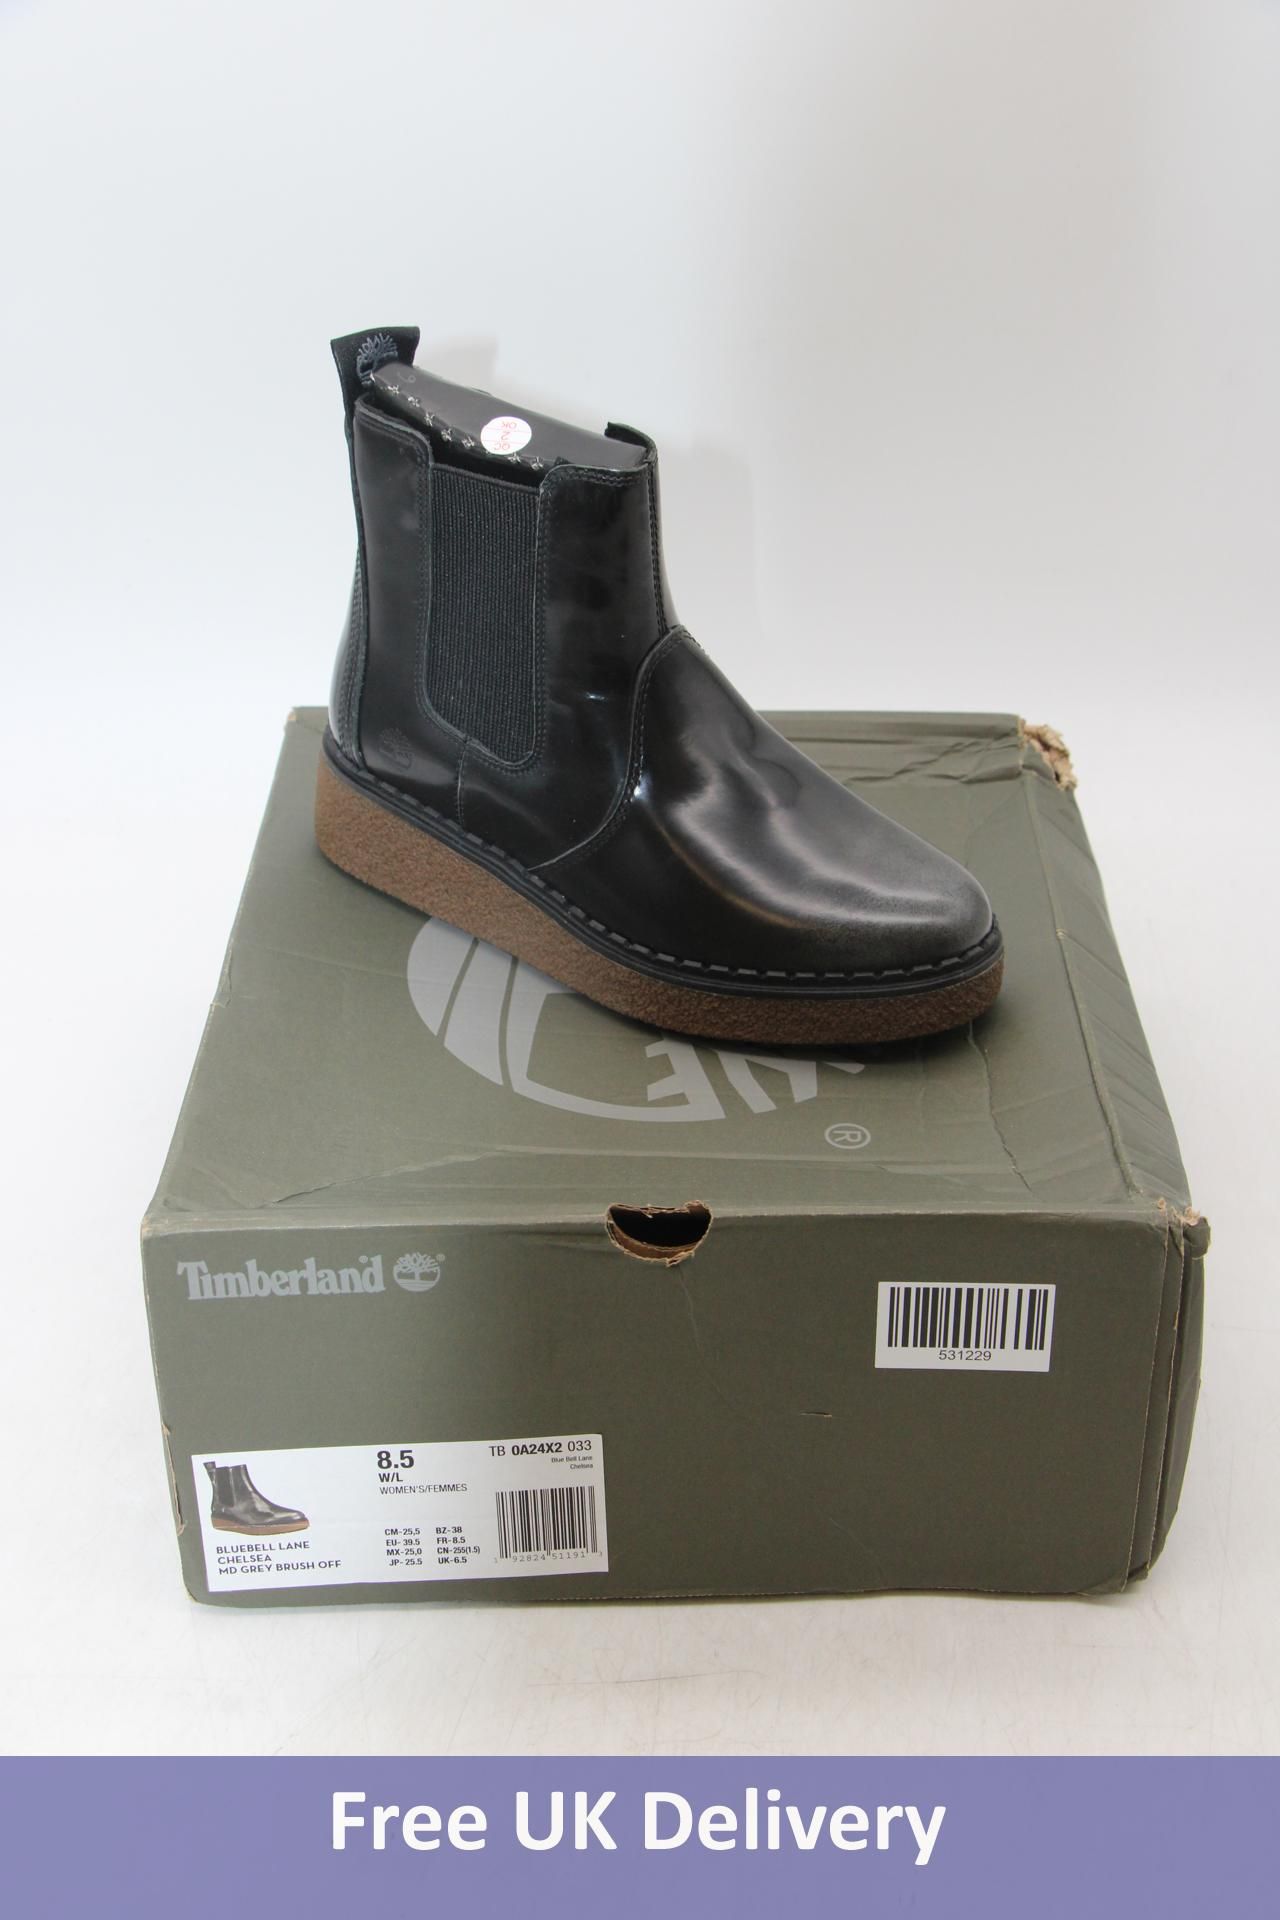 Timberland Bluebell Lane Chelsea Boots, Black/Grey Brush Off, UK 6.5. Box damaged